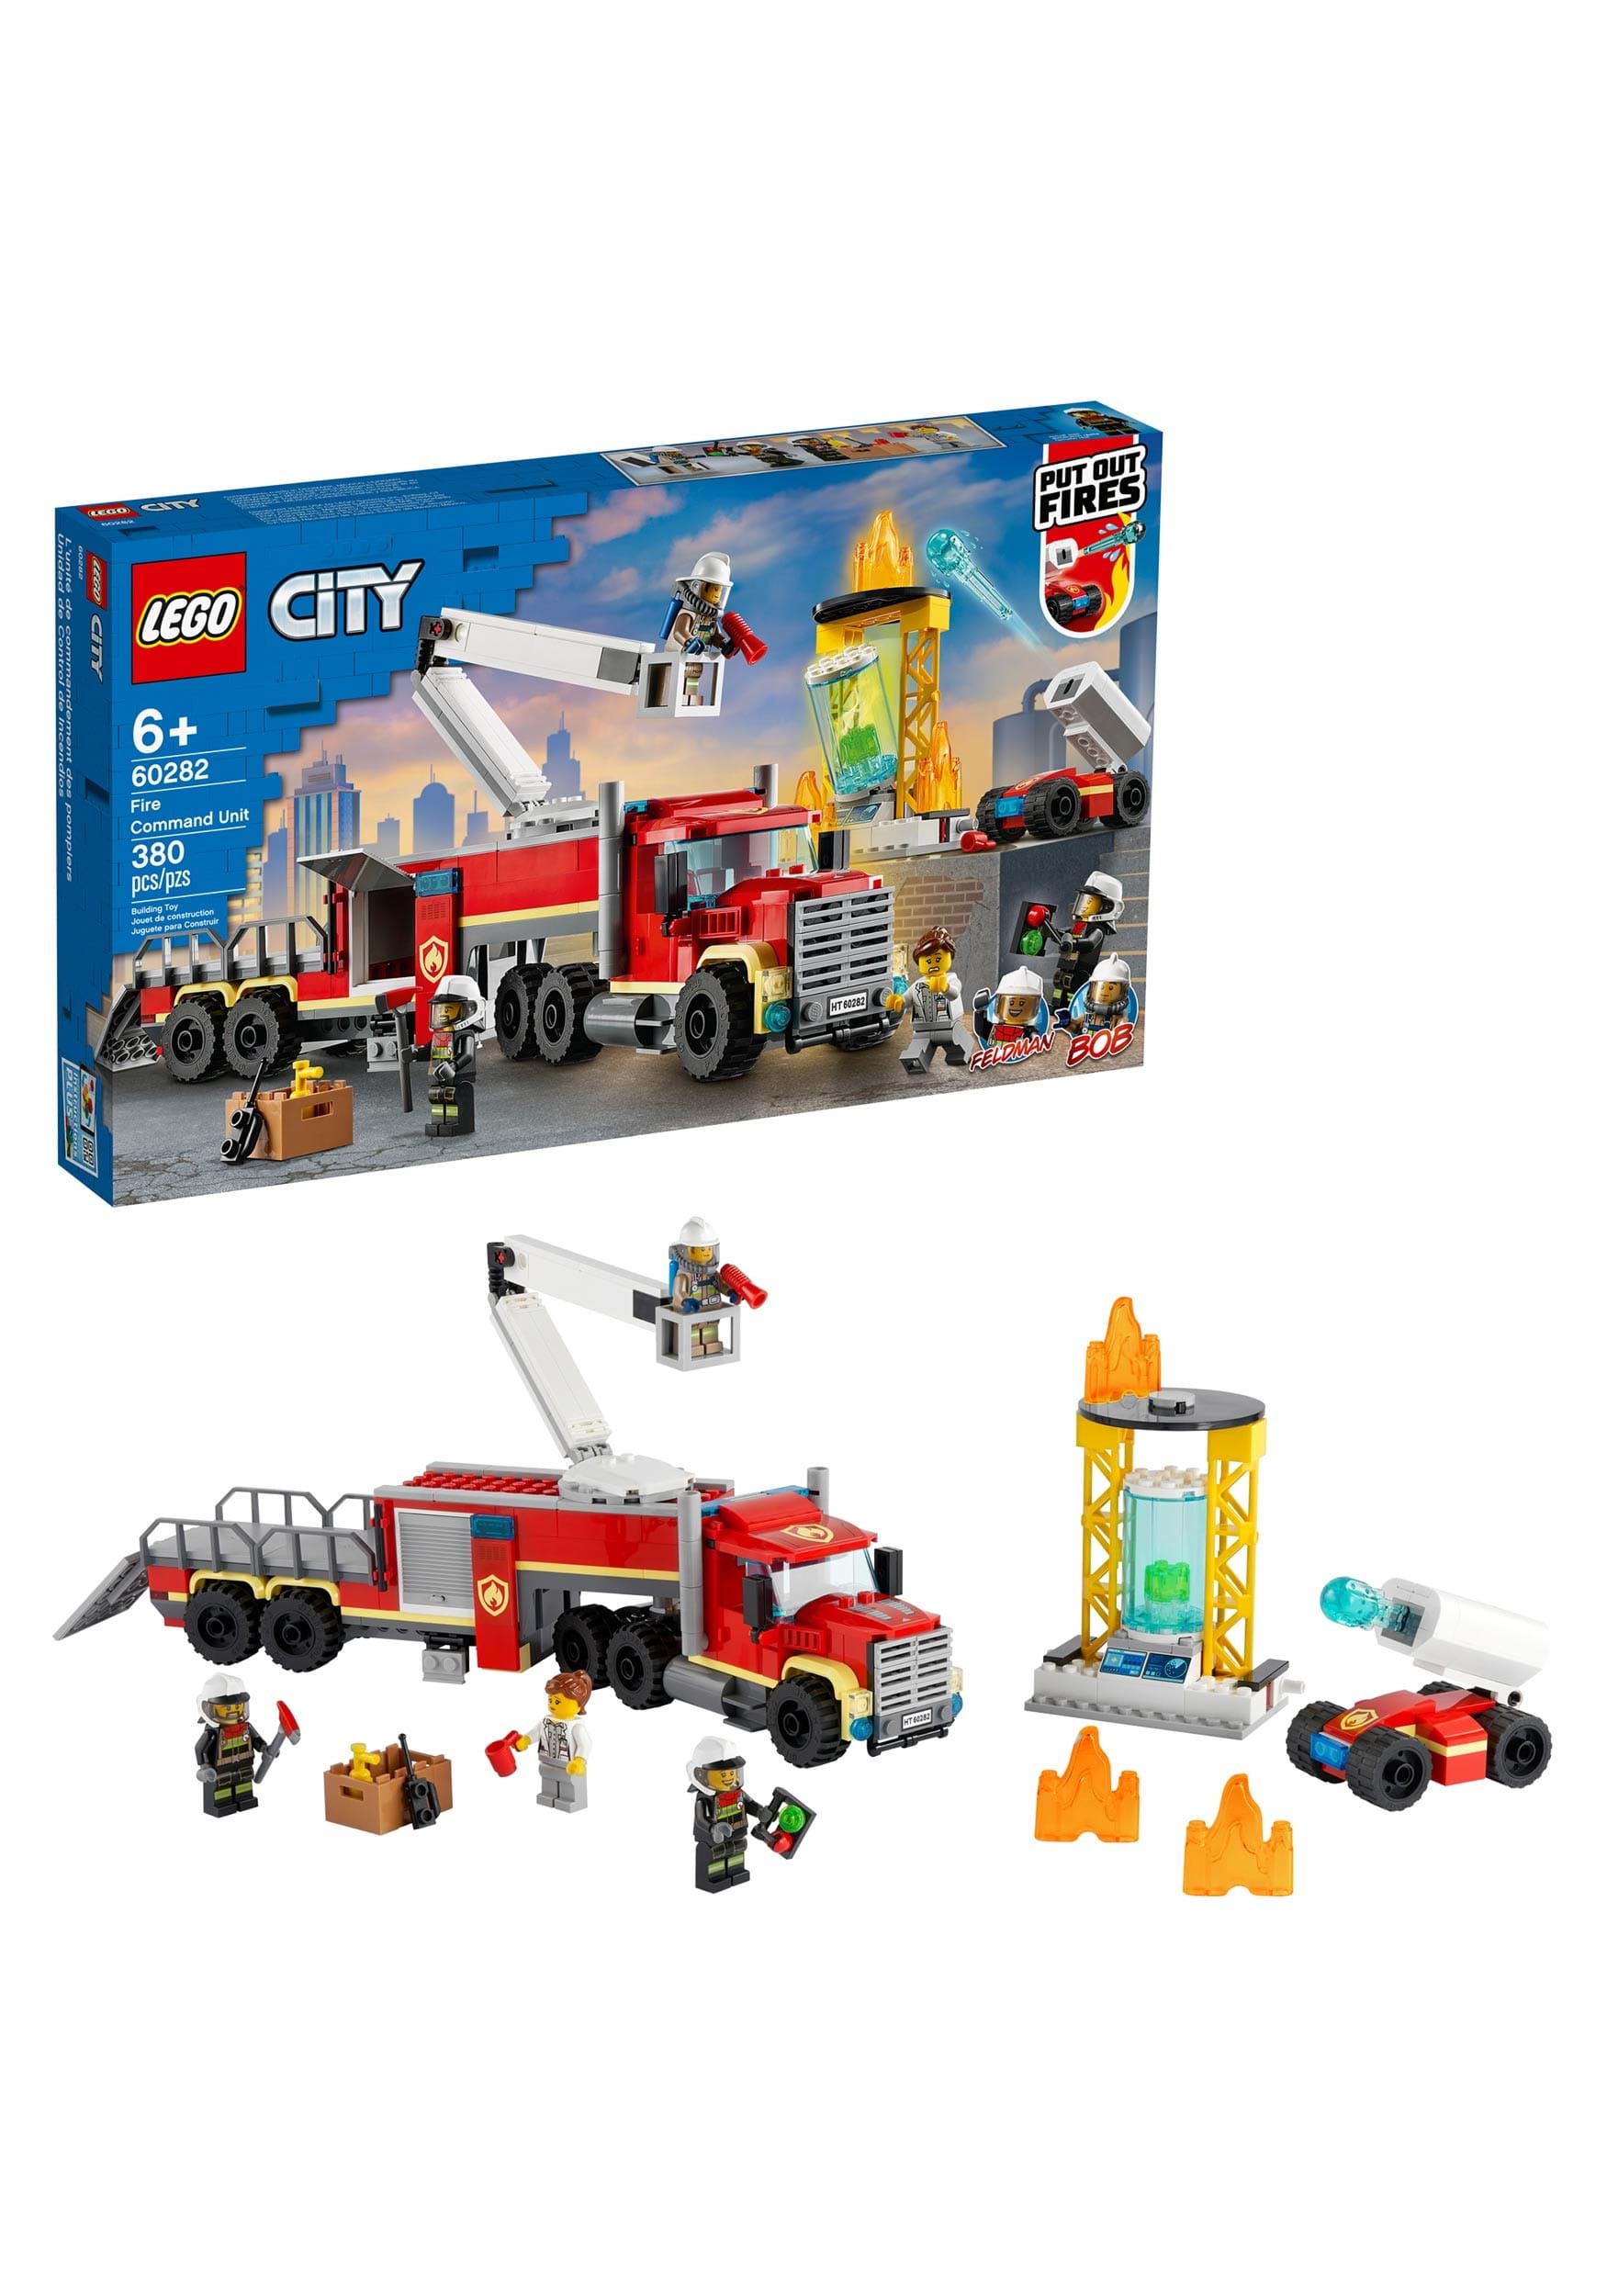 Fire Command Unit LEGO City Set